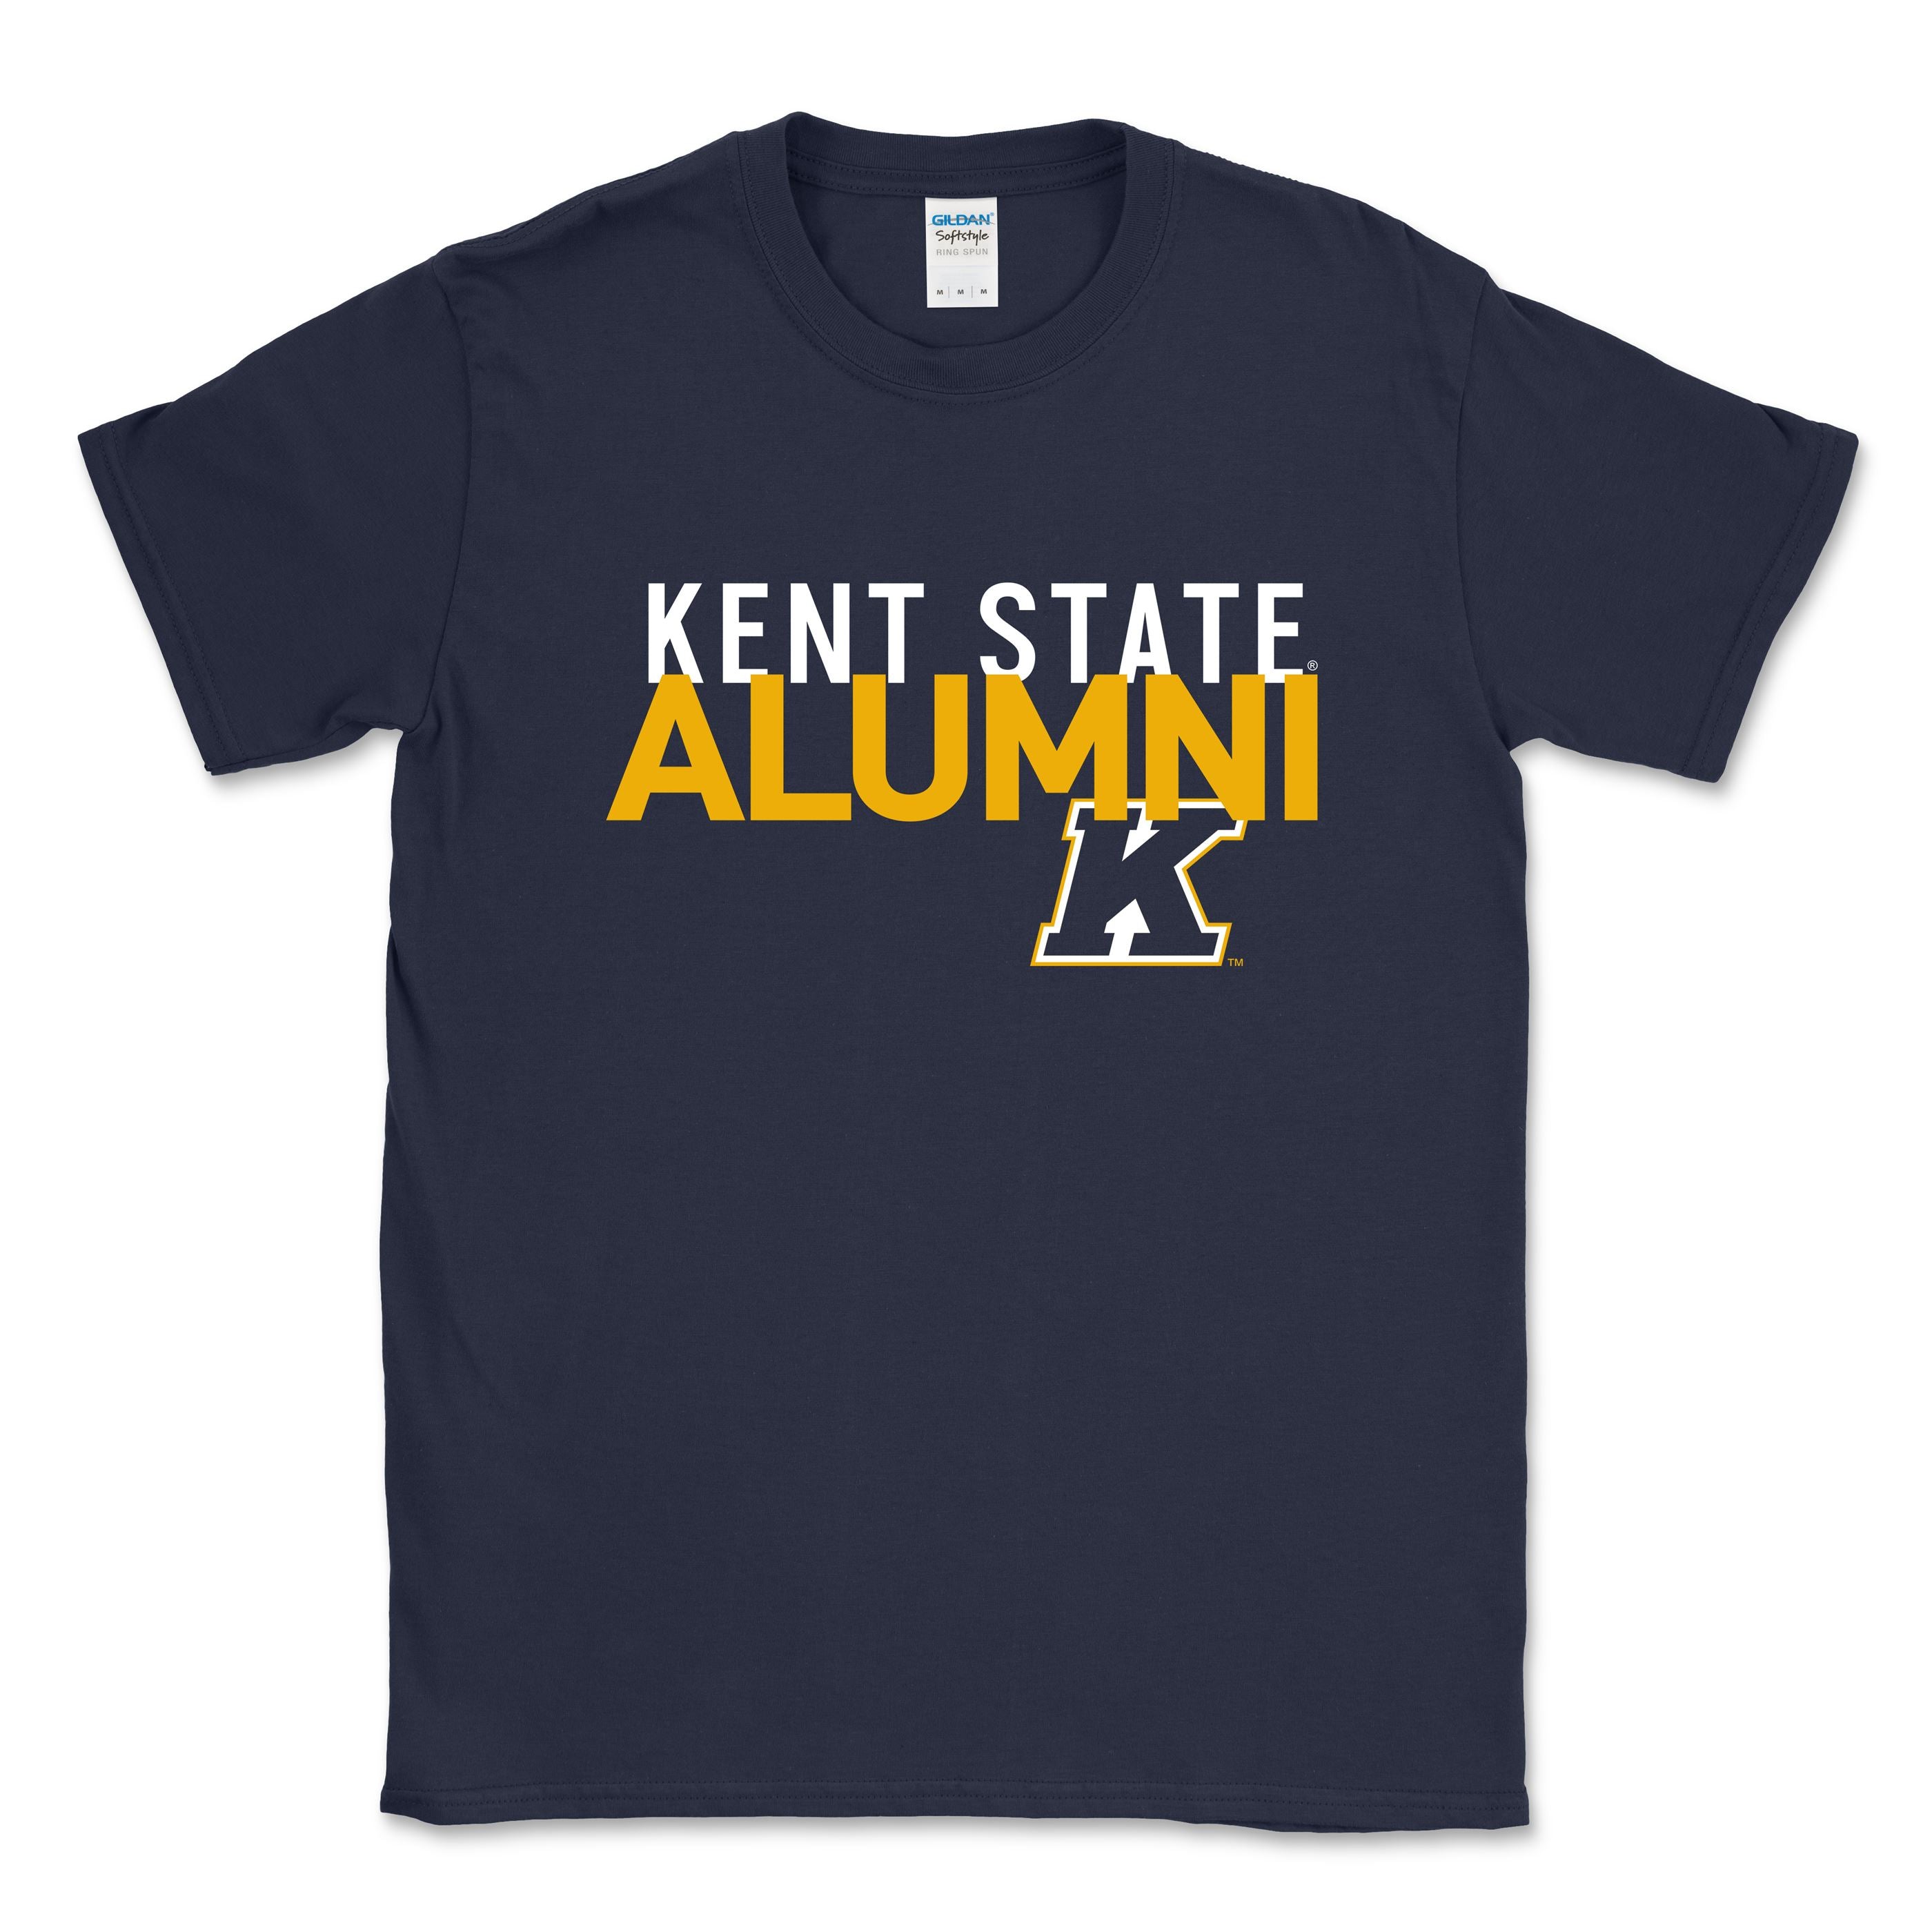 Kent State Alumni T-Shirt